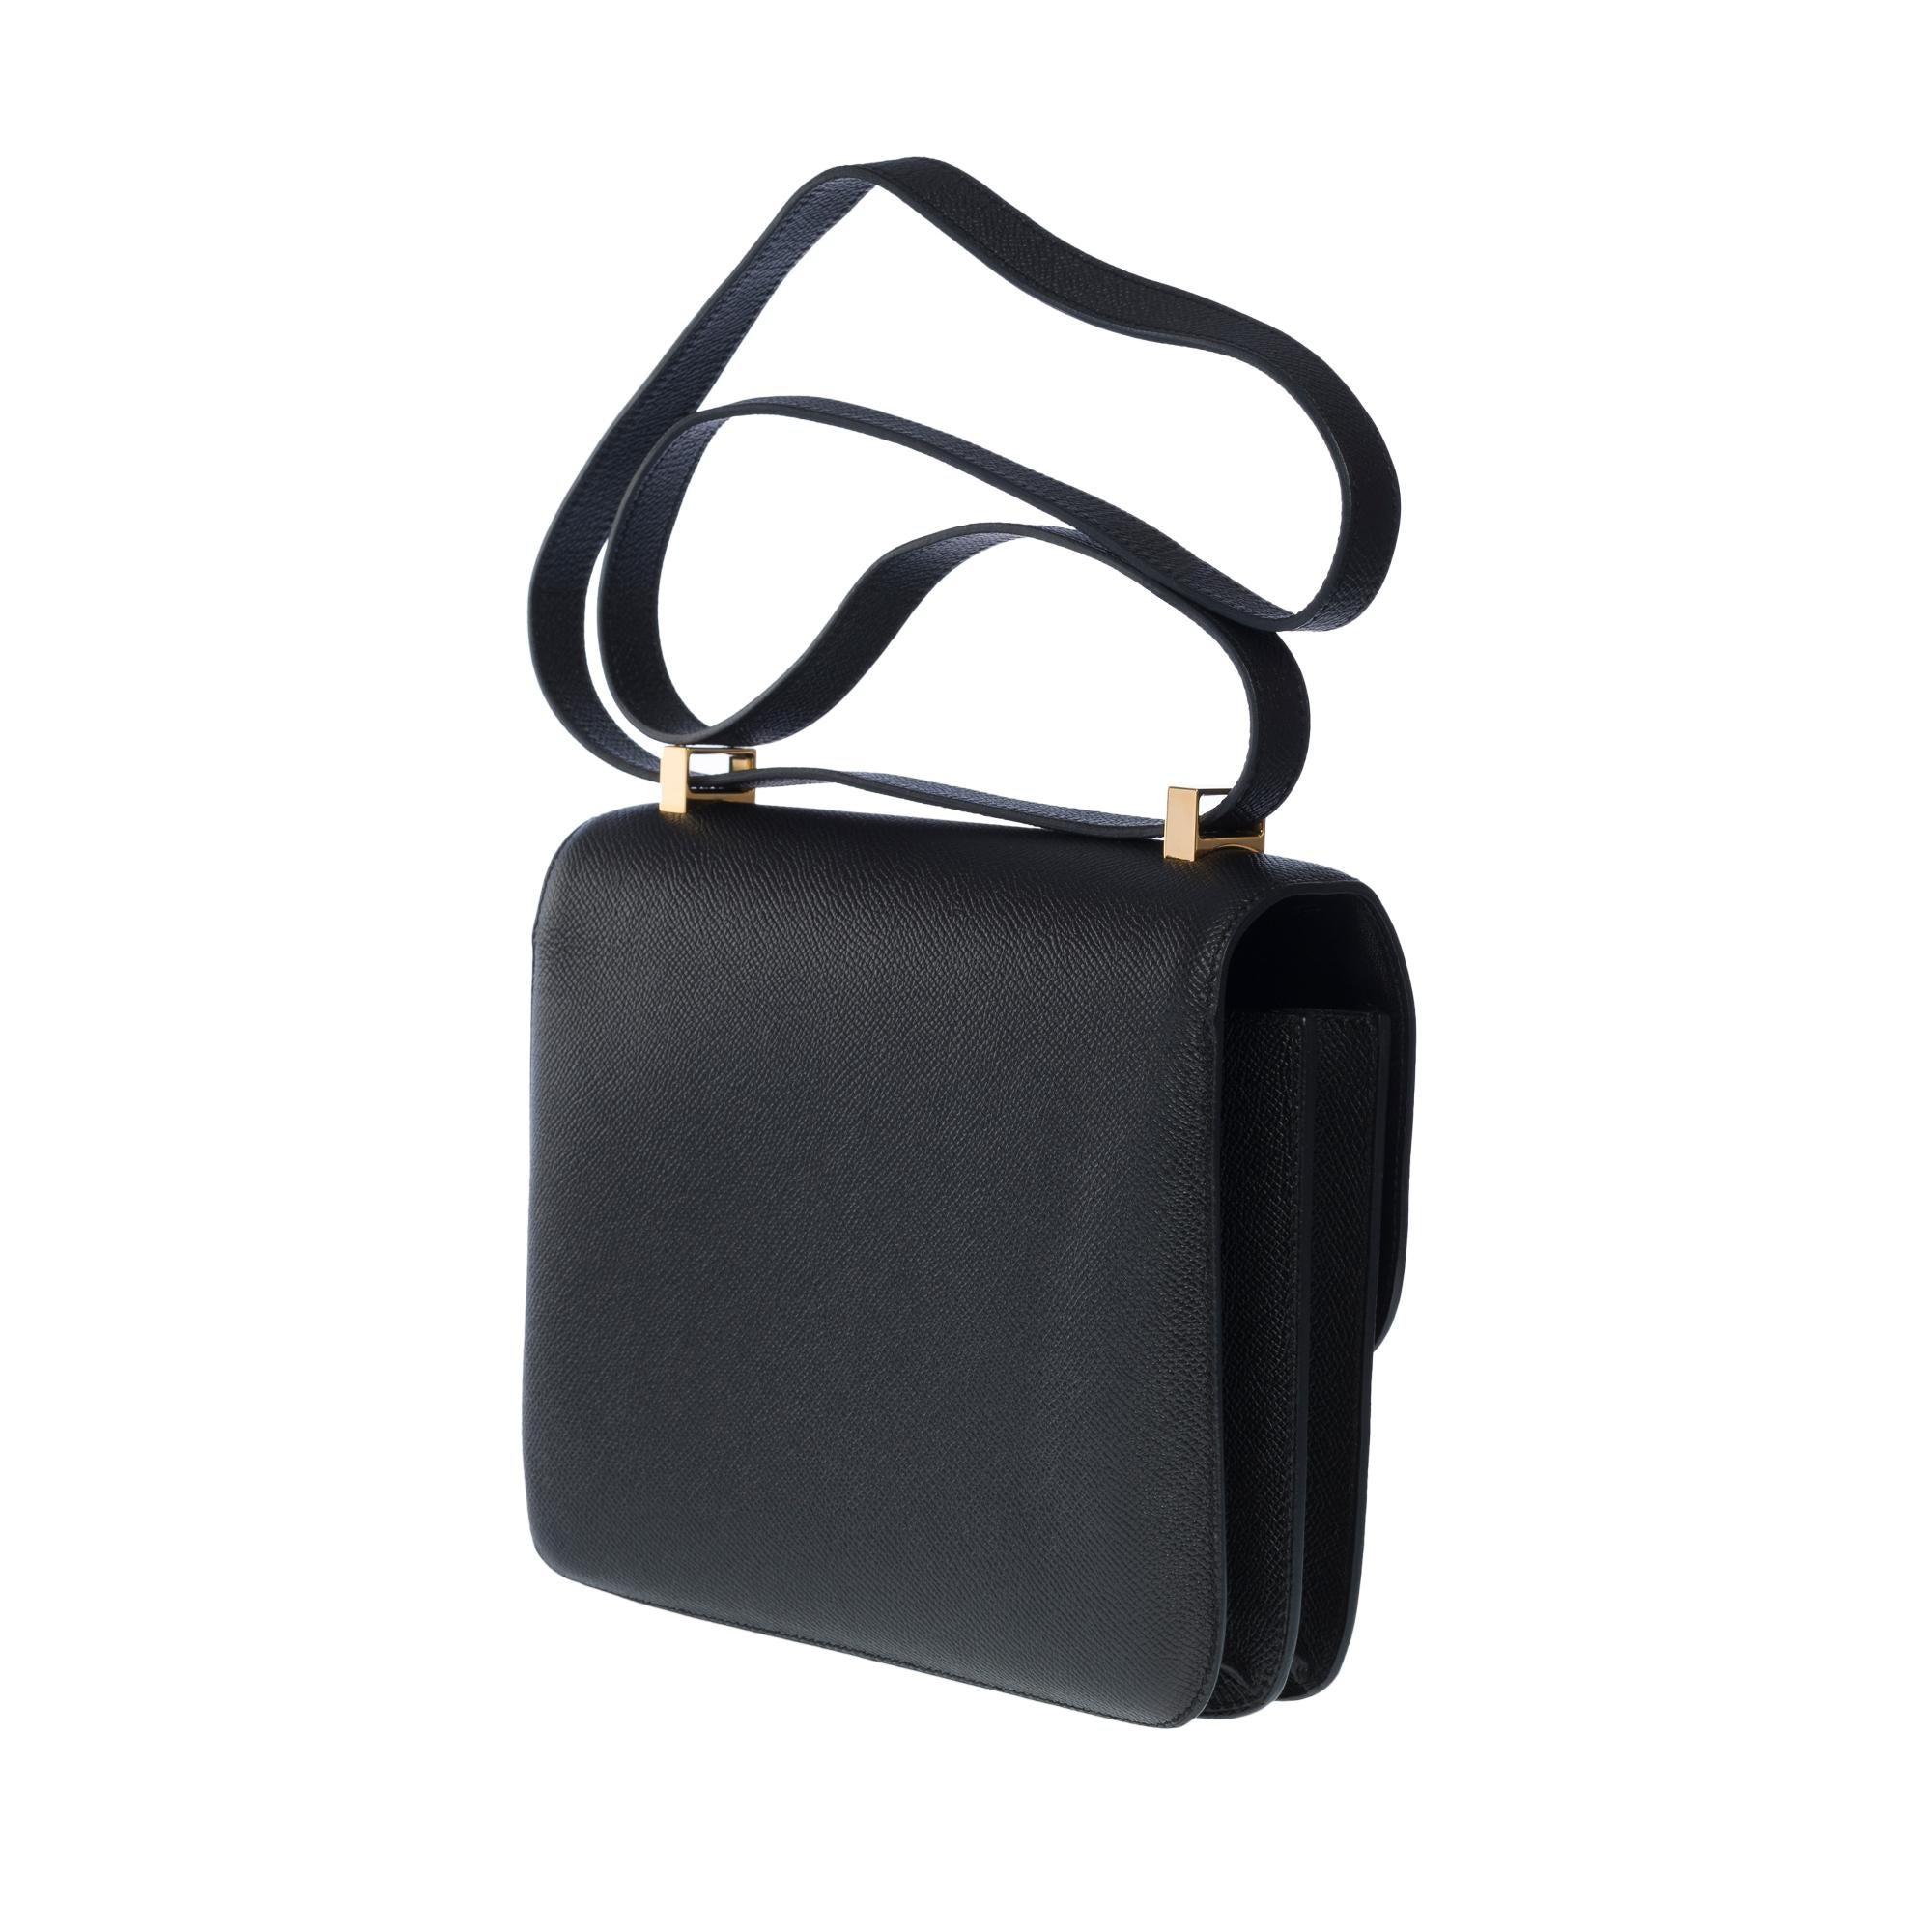 Gorgeous Hermès Constance shoulder bag in black epsom leather , GHW 1